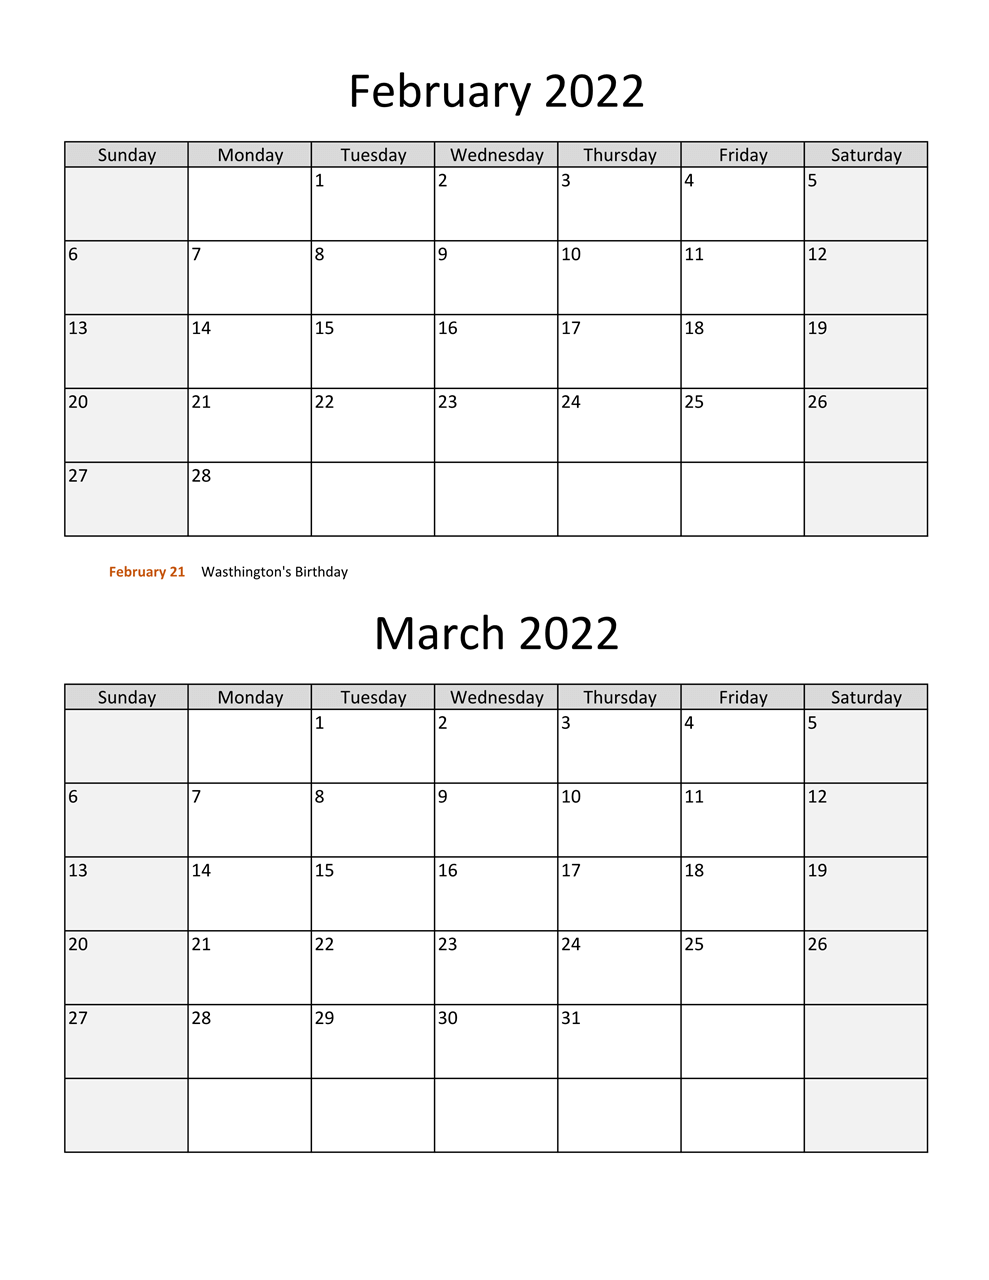 2022 March Calendar Printable